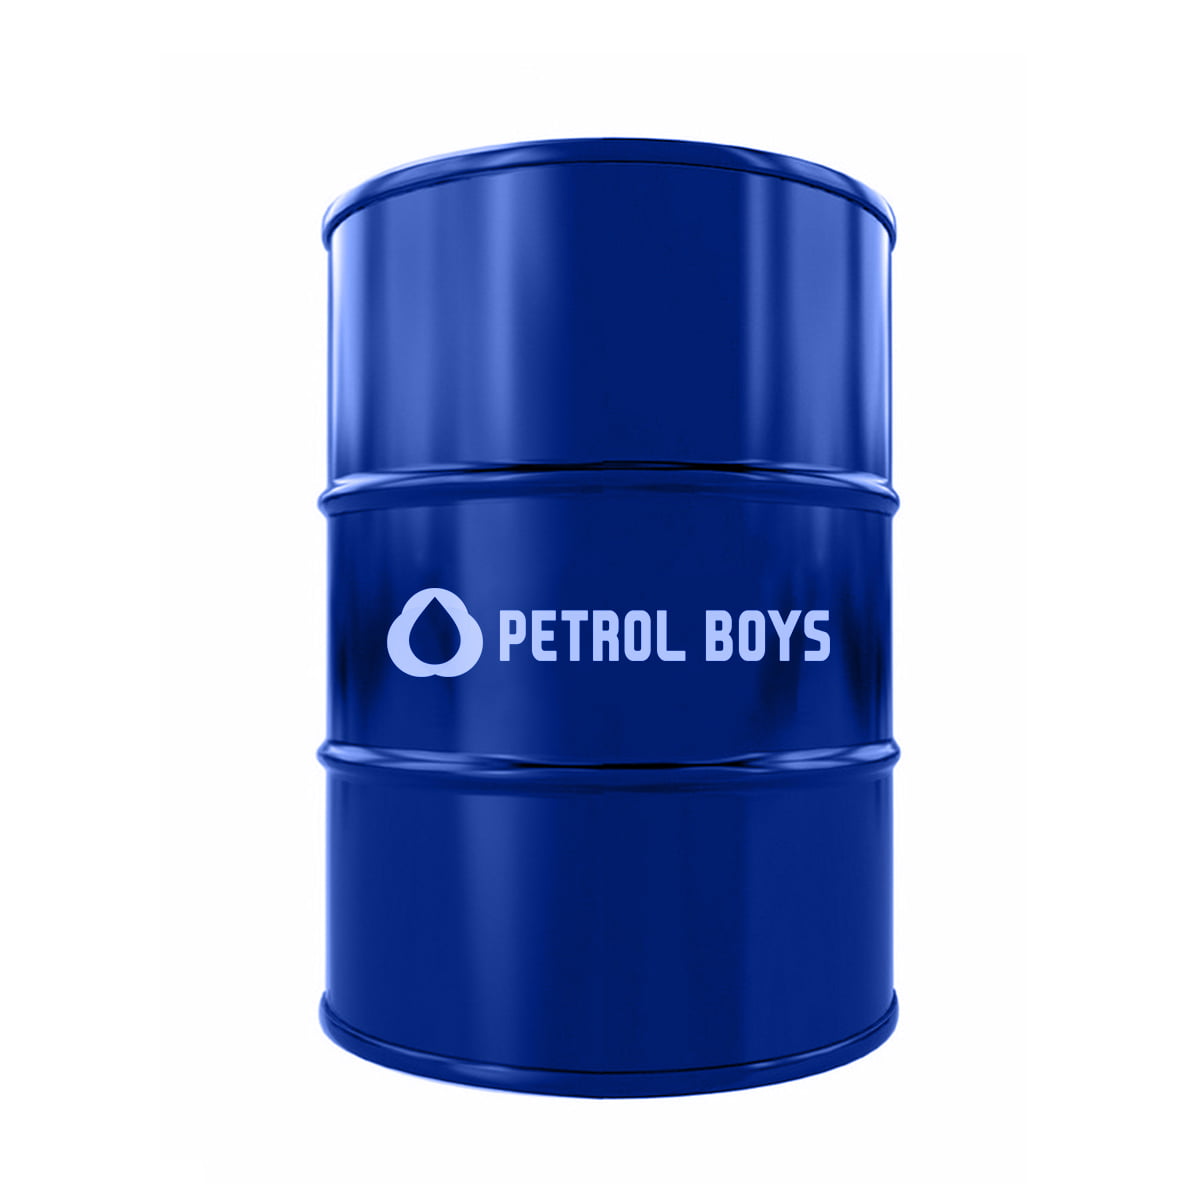 Diesel Archives - Petrol Boys